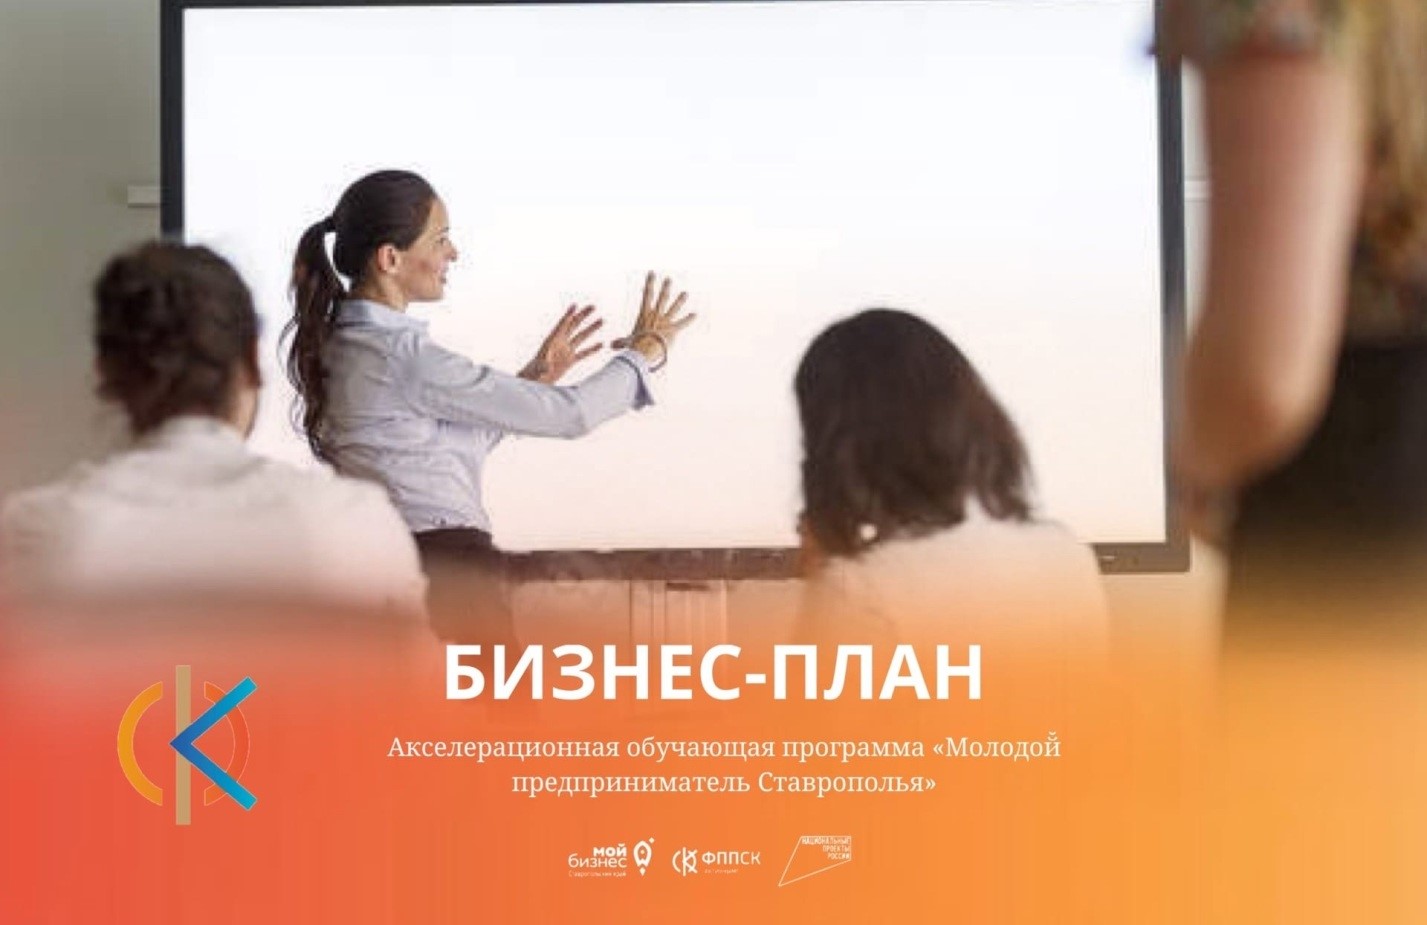 Акселерационная обучающая программа  «Молодой̆ предприниматель Ставрополья»